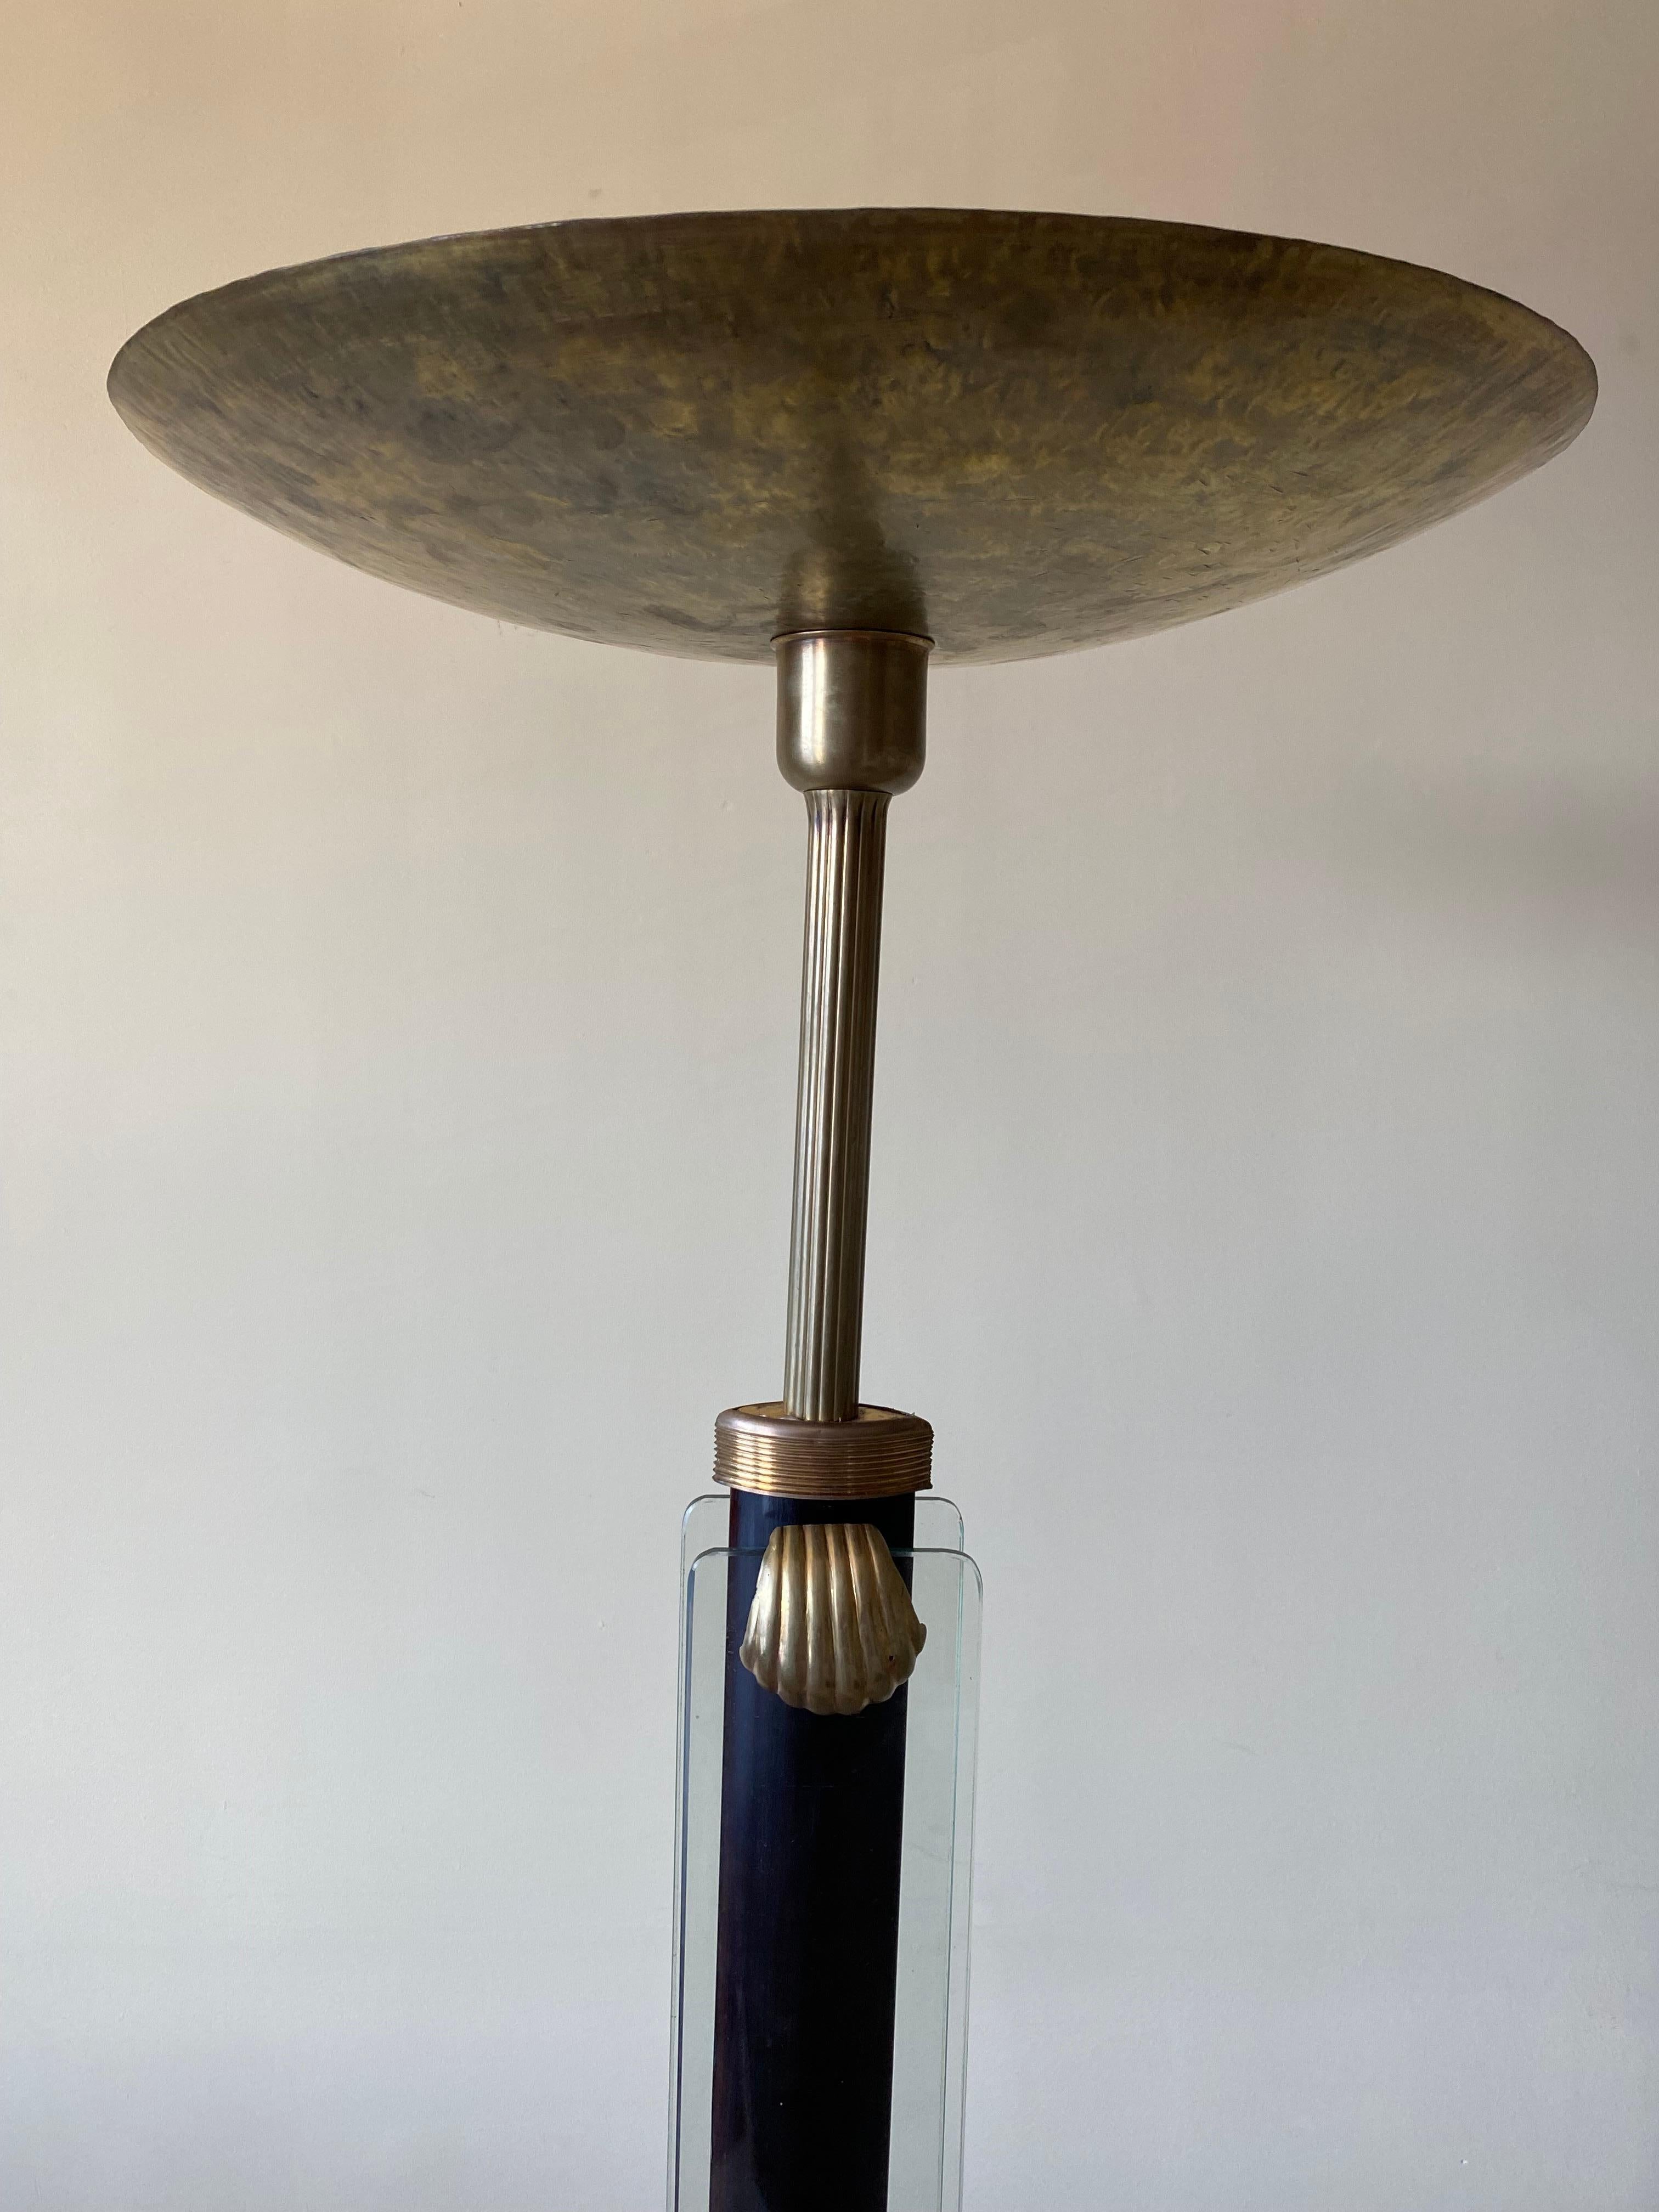 Magnifique lampadaire torchère en laiton patiné attribué à Pietro Chiesa pour Fontana Arte, vers les années 1930.

Des panneaux de verre courent le long de la colonne centrale. Fixé au bois ébonisé avec des rondelles/écrous et recouvert de clips